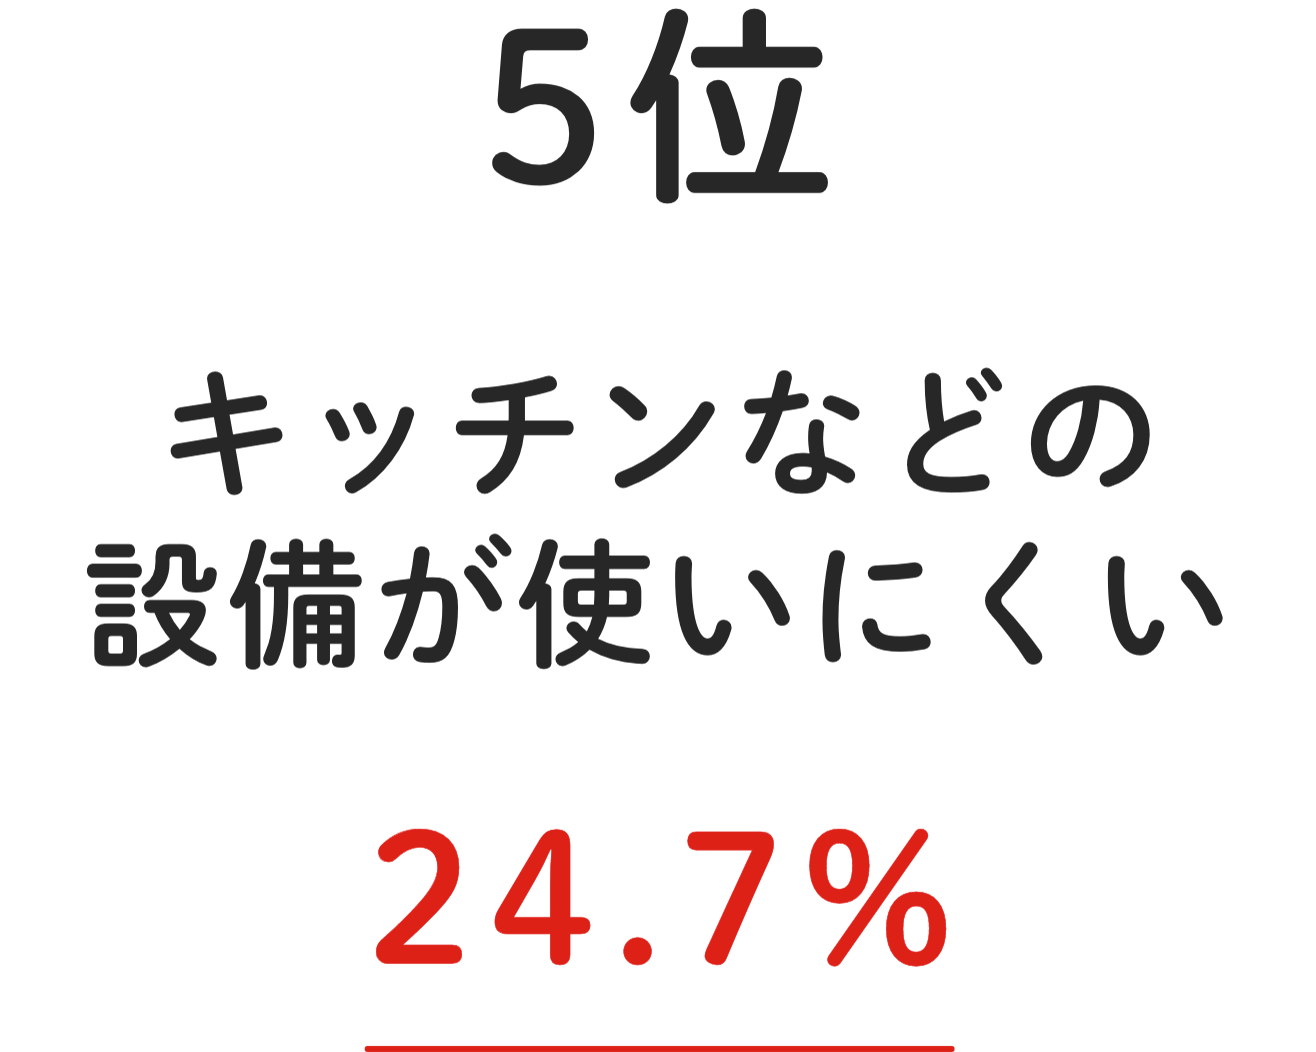 5位 収納の種類が少ない 8.5%